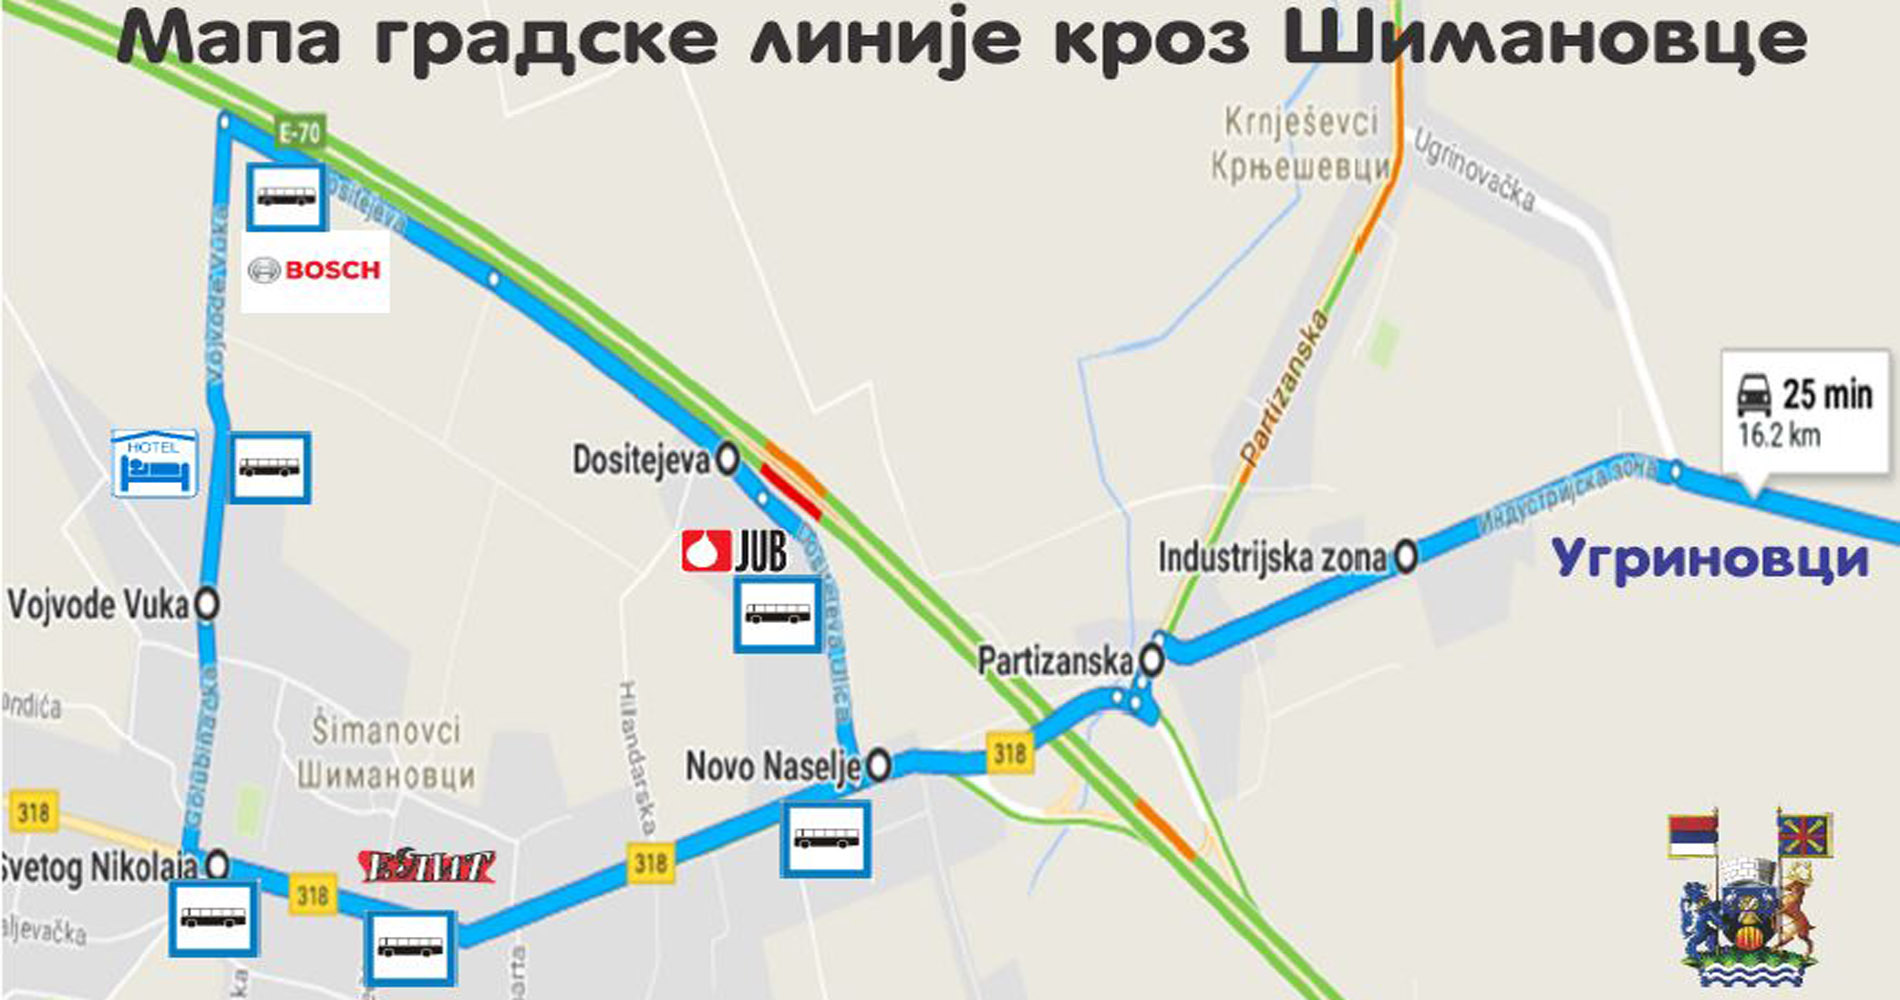 Mapa_gradske_linije_kroz_Simanovce_v.jpg